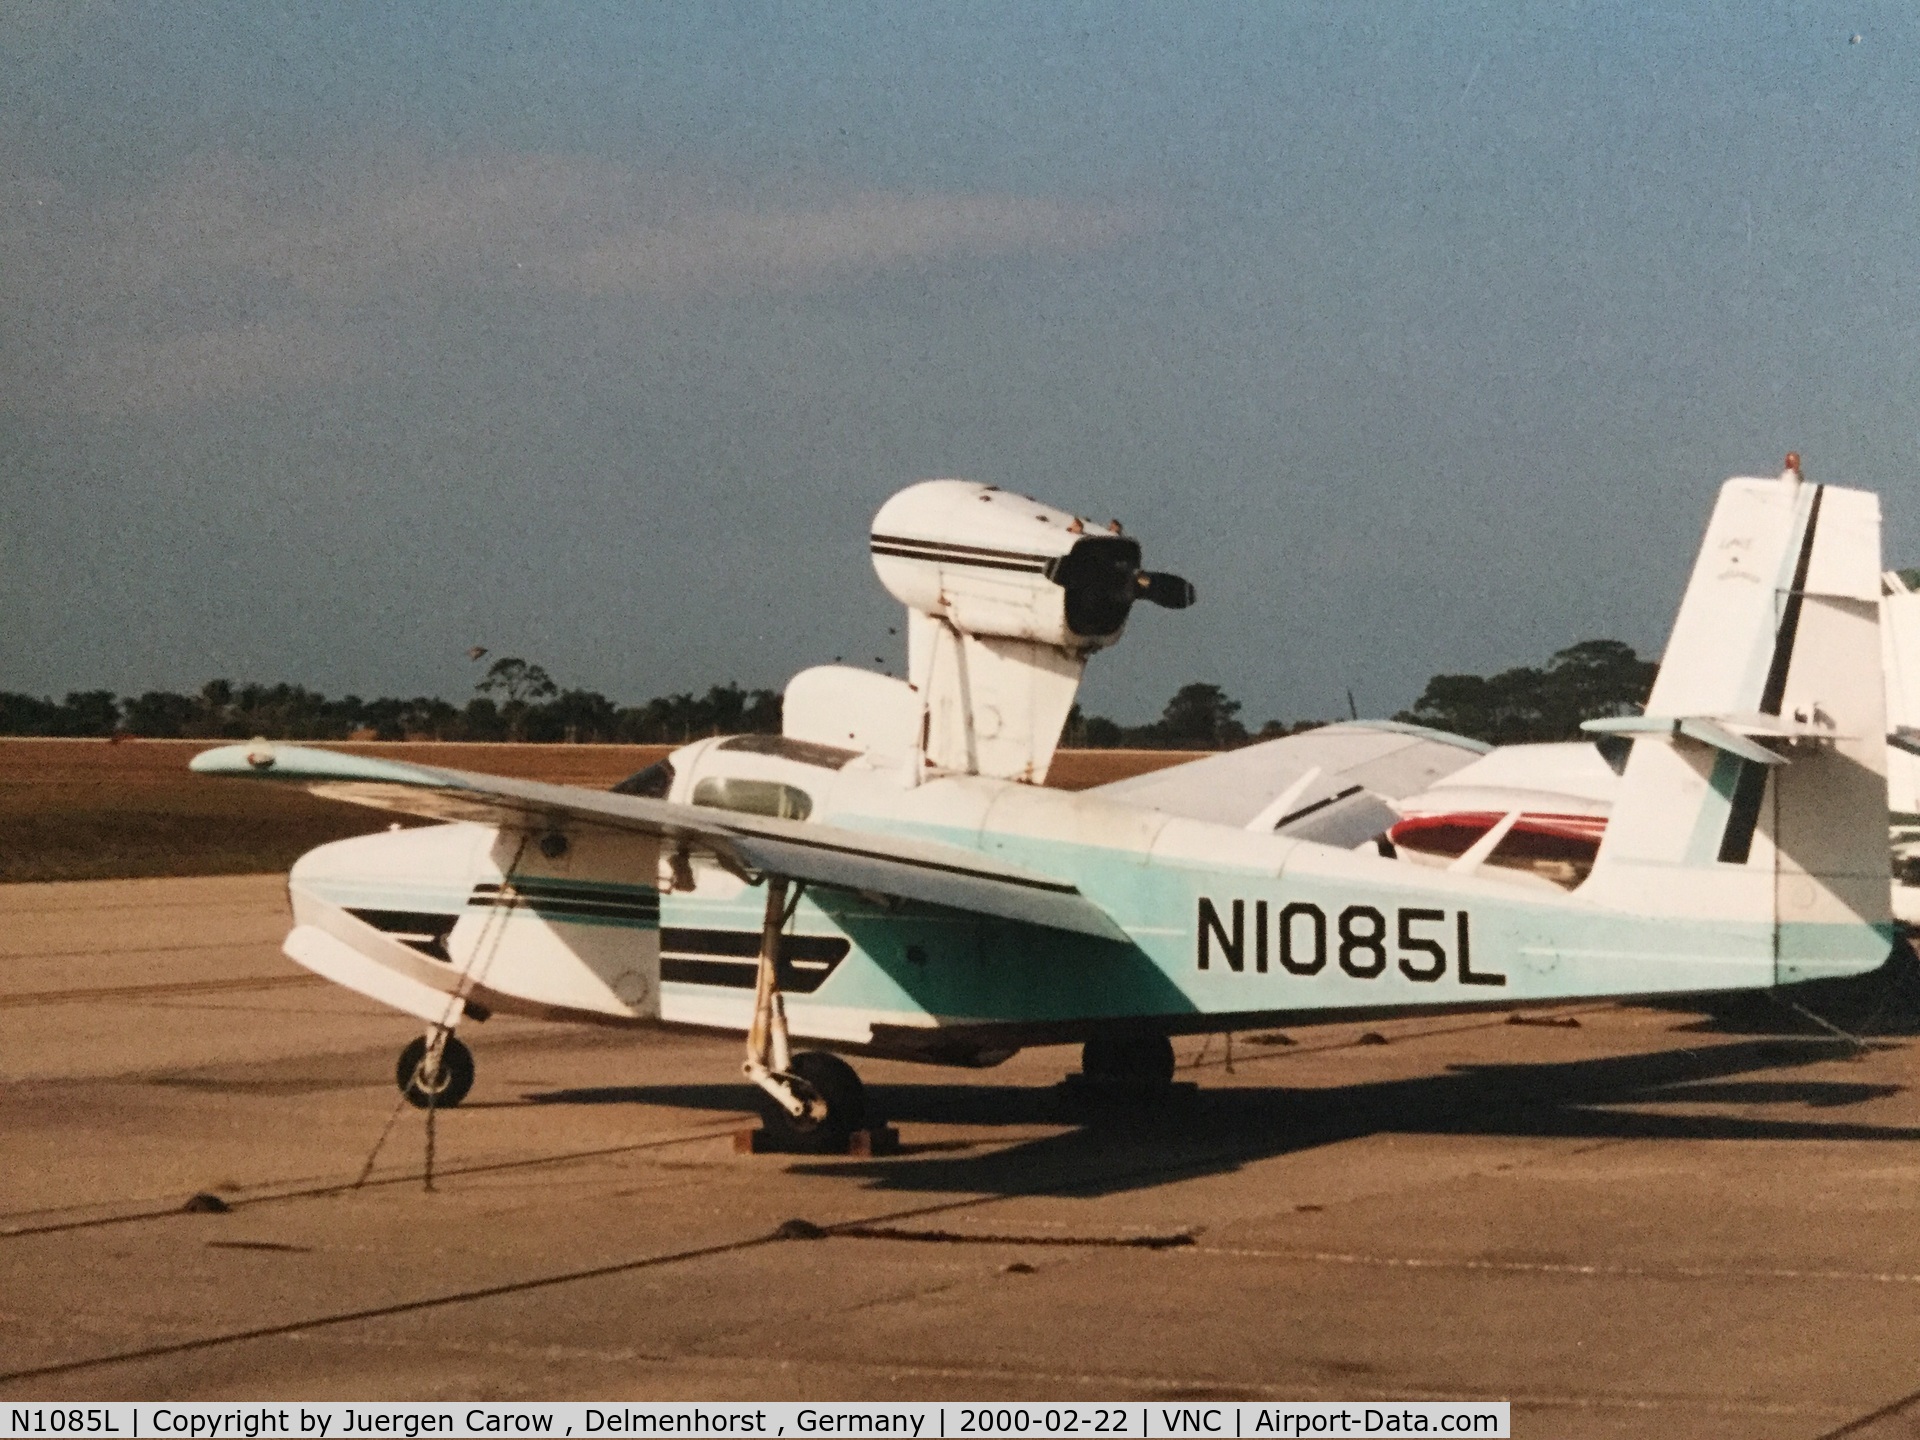 N1085L, 1975 Consolidated Aeronautics Inc. LAKE LA-4-200 C/N 678, I took a Foto of this plane.